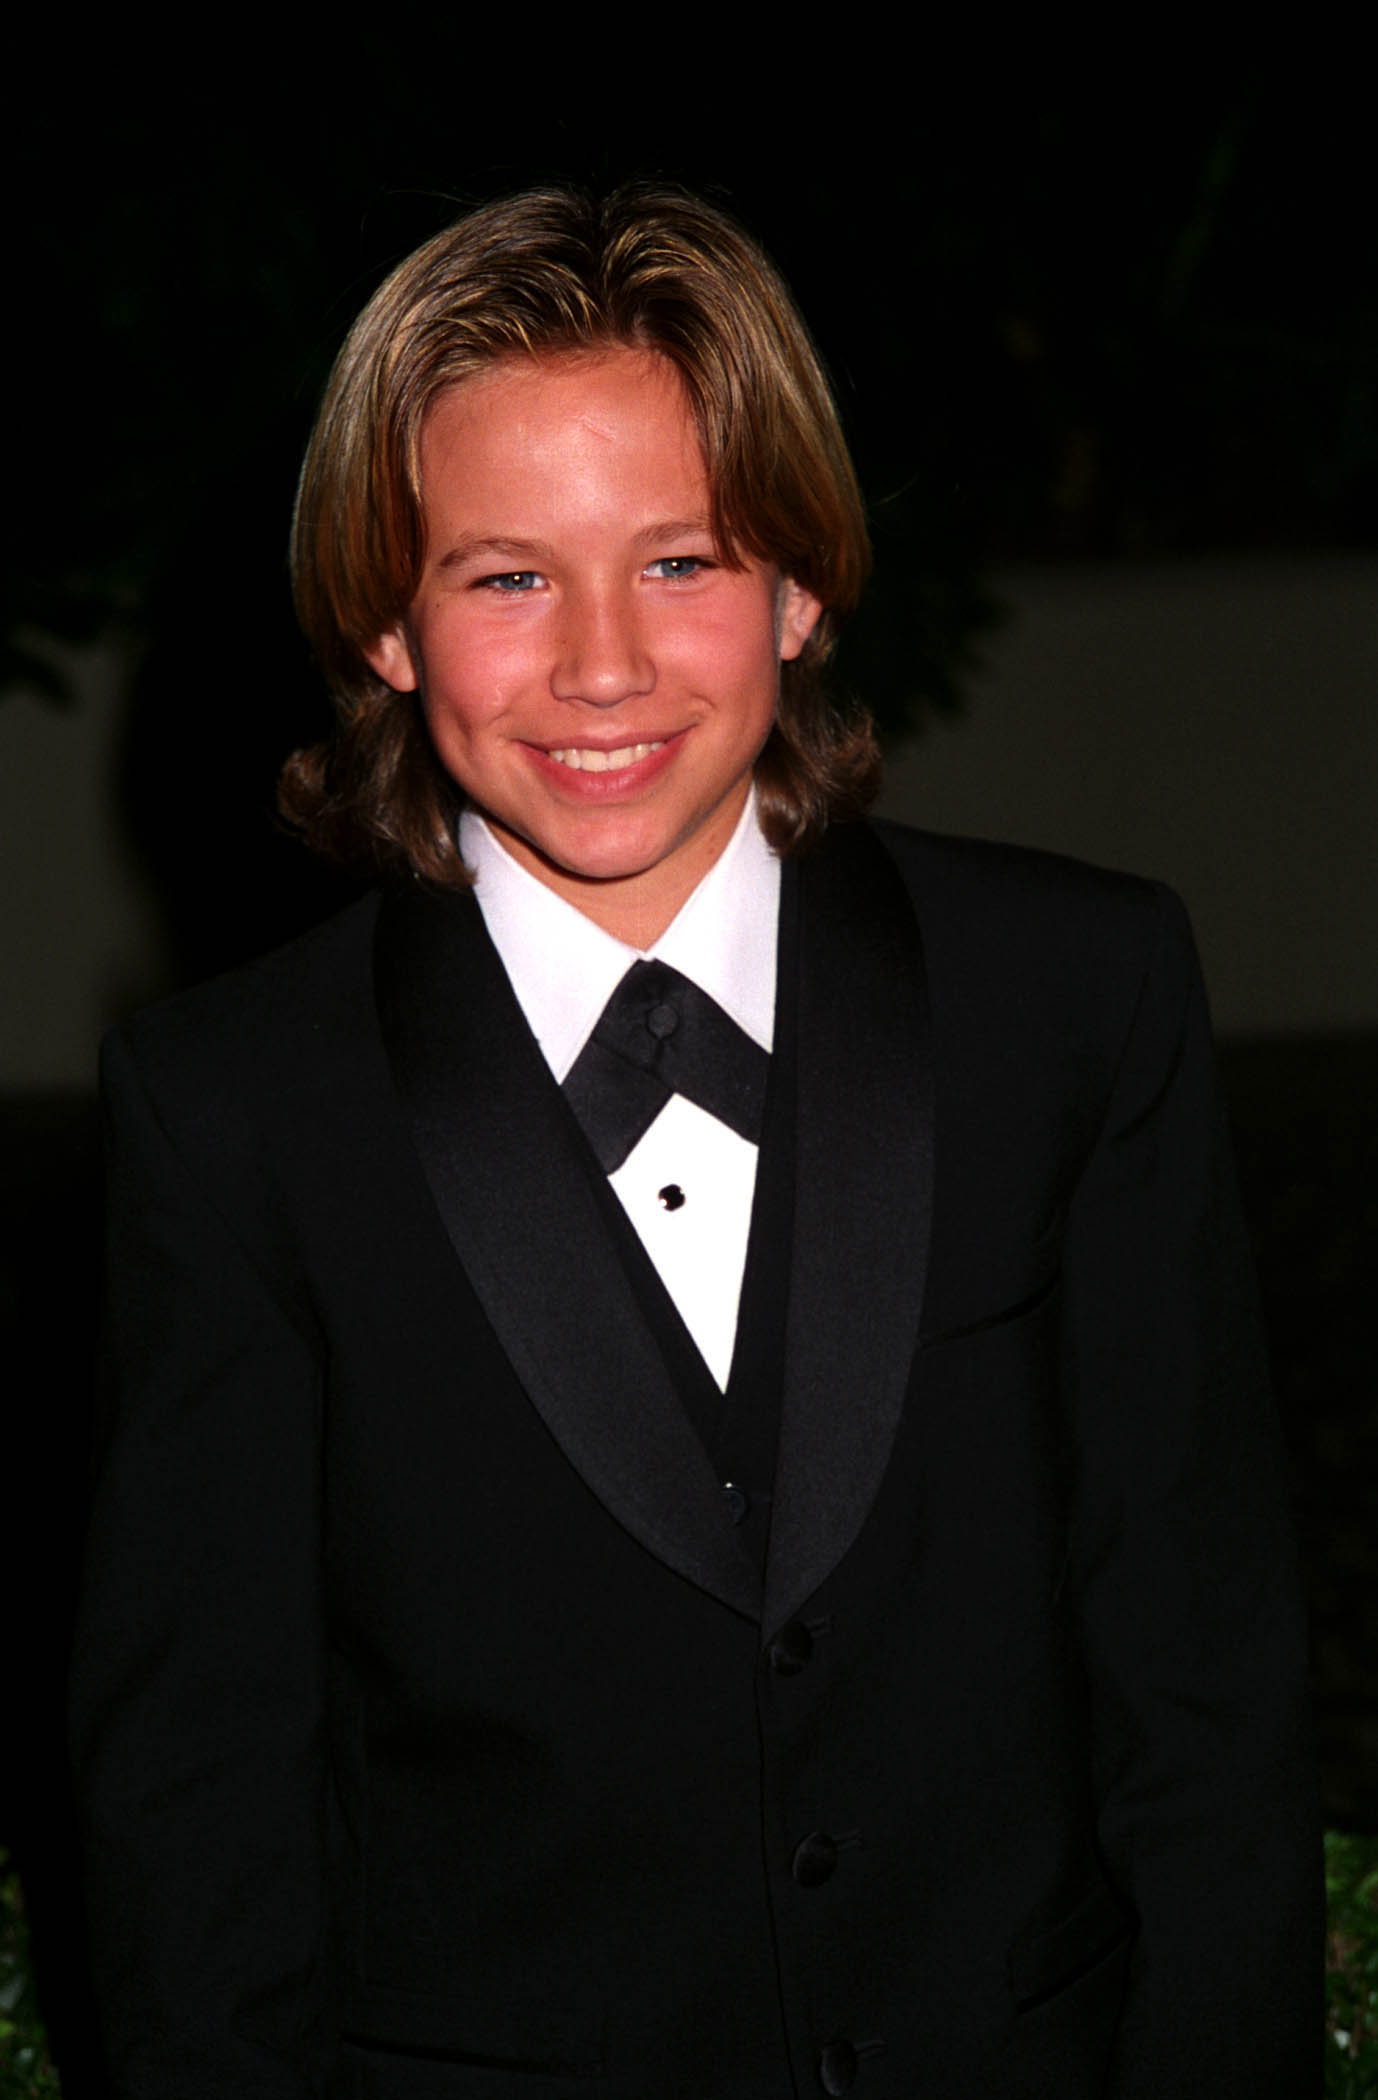 Jonathan Taylor Thomas pendant les Golden Globe Awards 1995 le 7 septembre 1995 à Los Angeles, Californie | Source : Getty Images